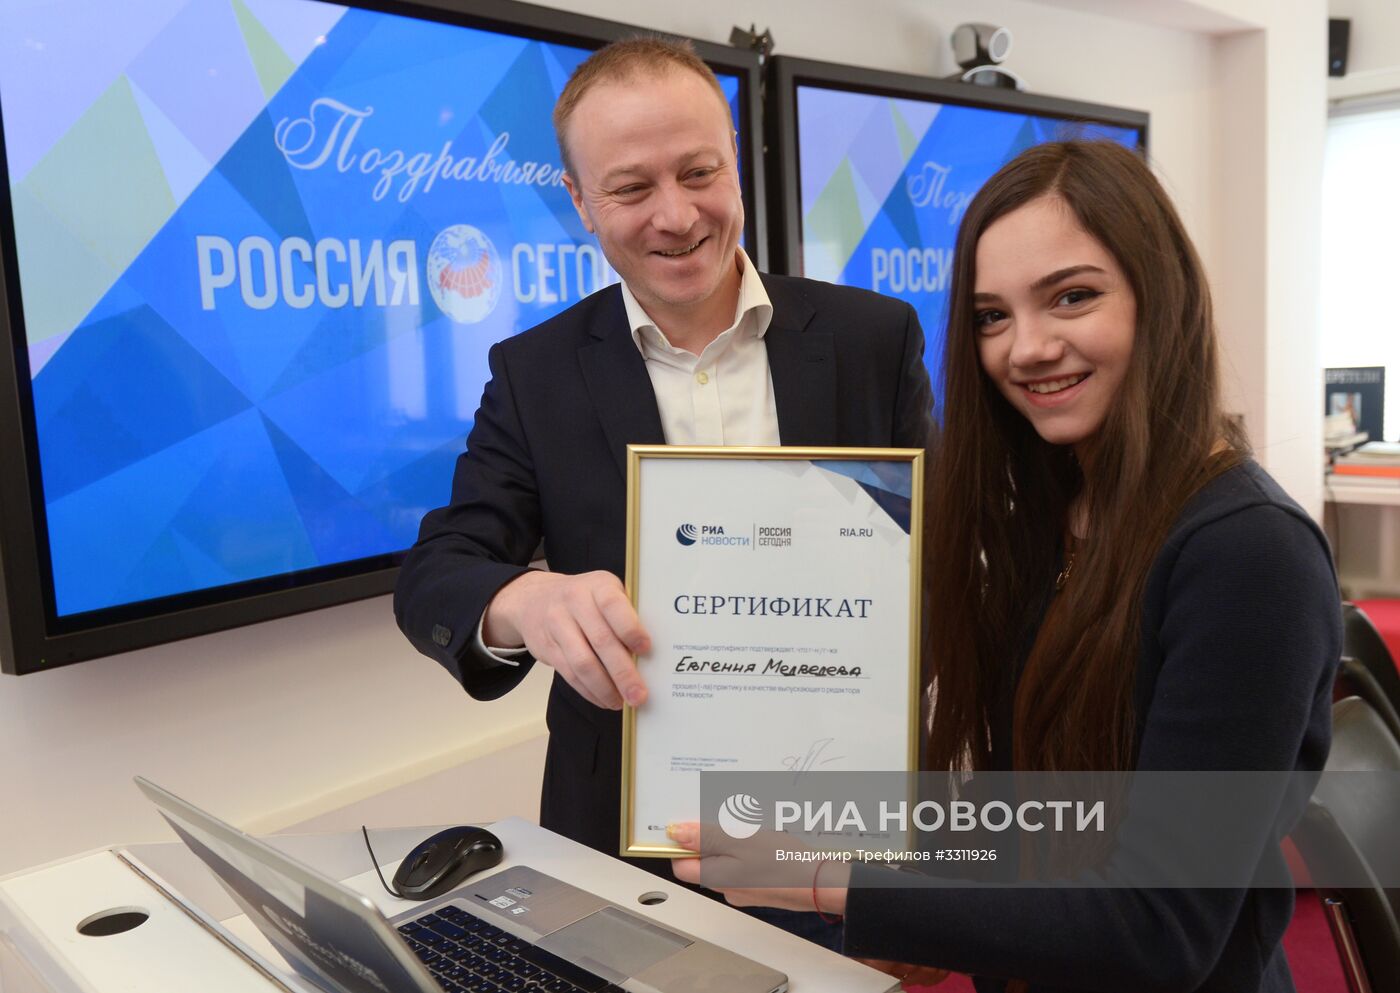 Фигуристки А. Загитова и Е. Медведева выступили в роли выпускающих редакторов "РИА Новости"